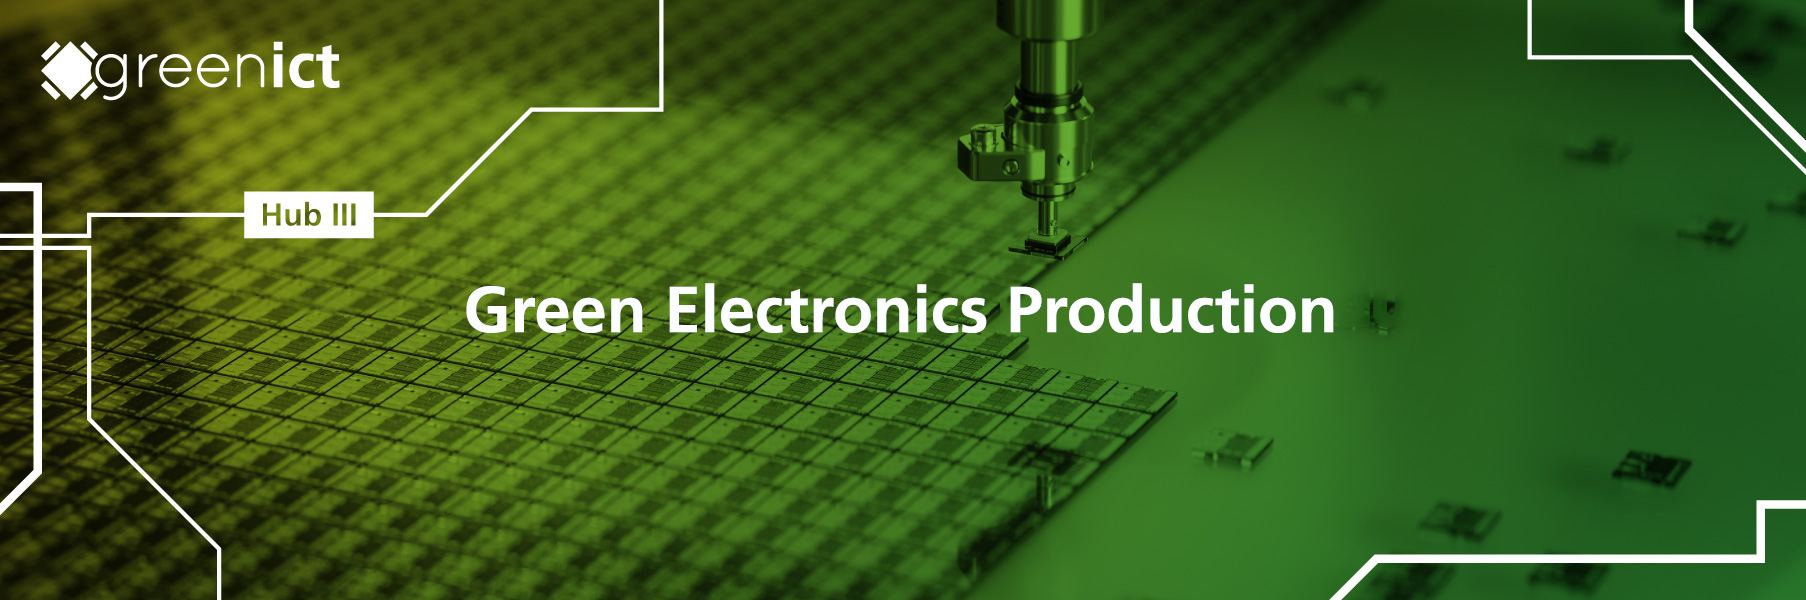 Hub 3: Resource-optimized electronics production